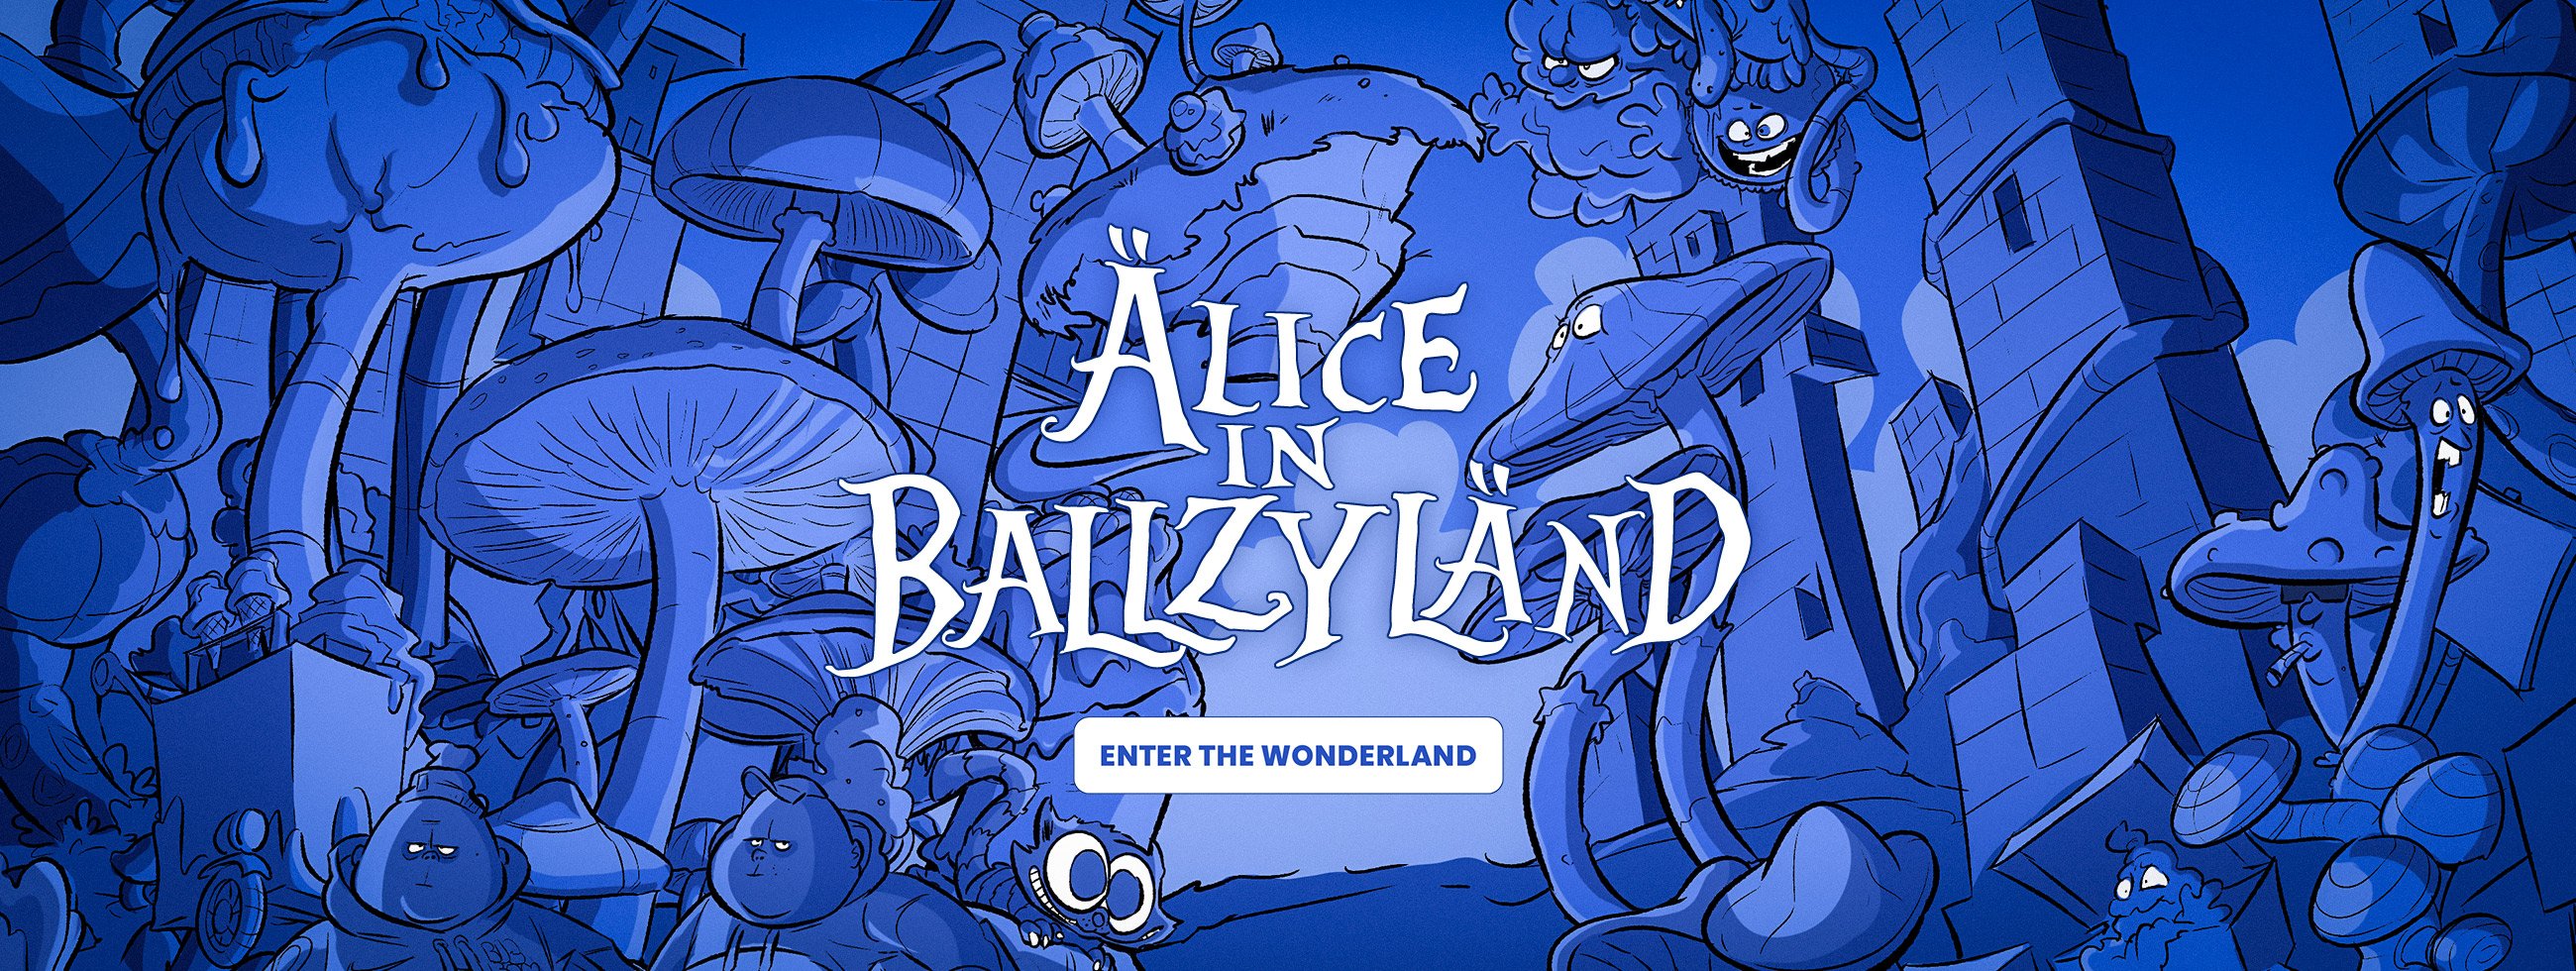 Alice in Ballzyland - EN